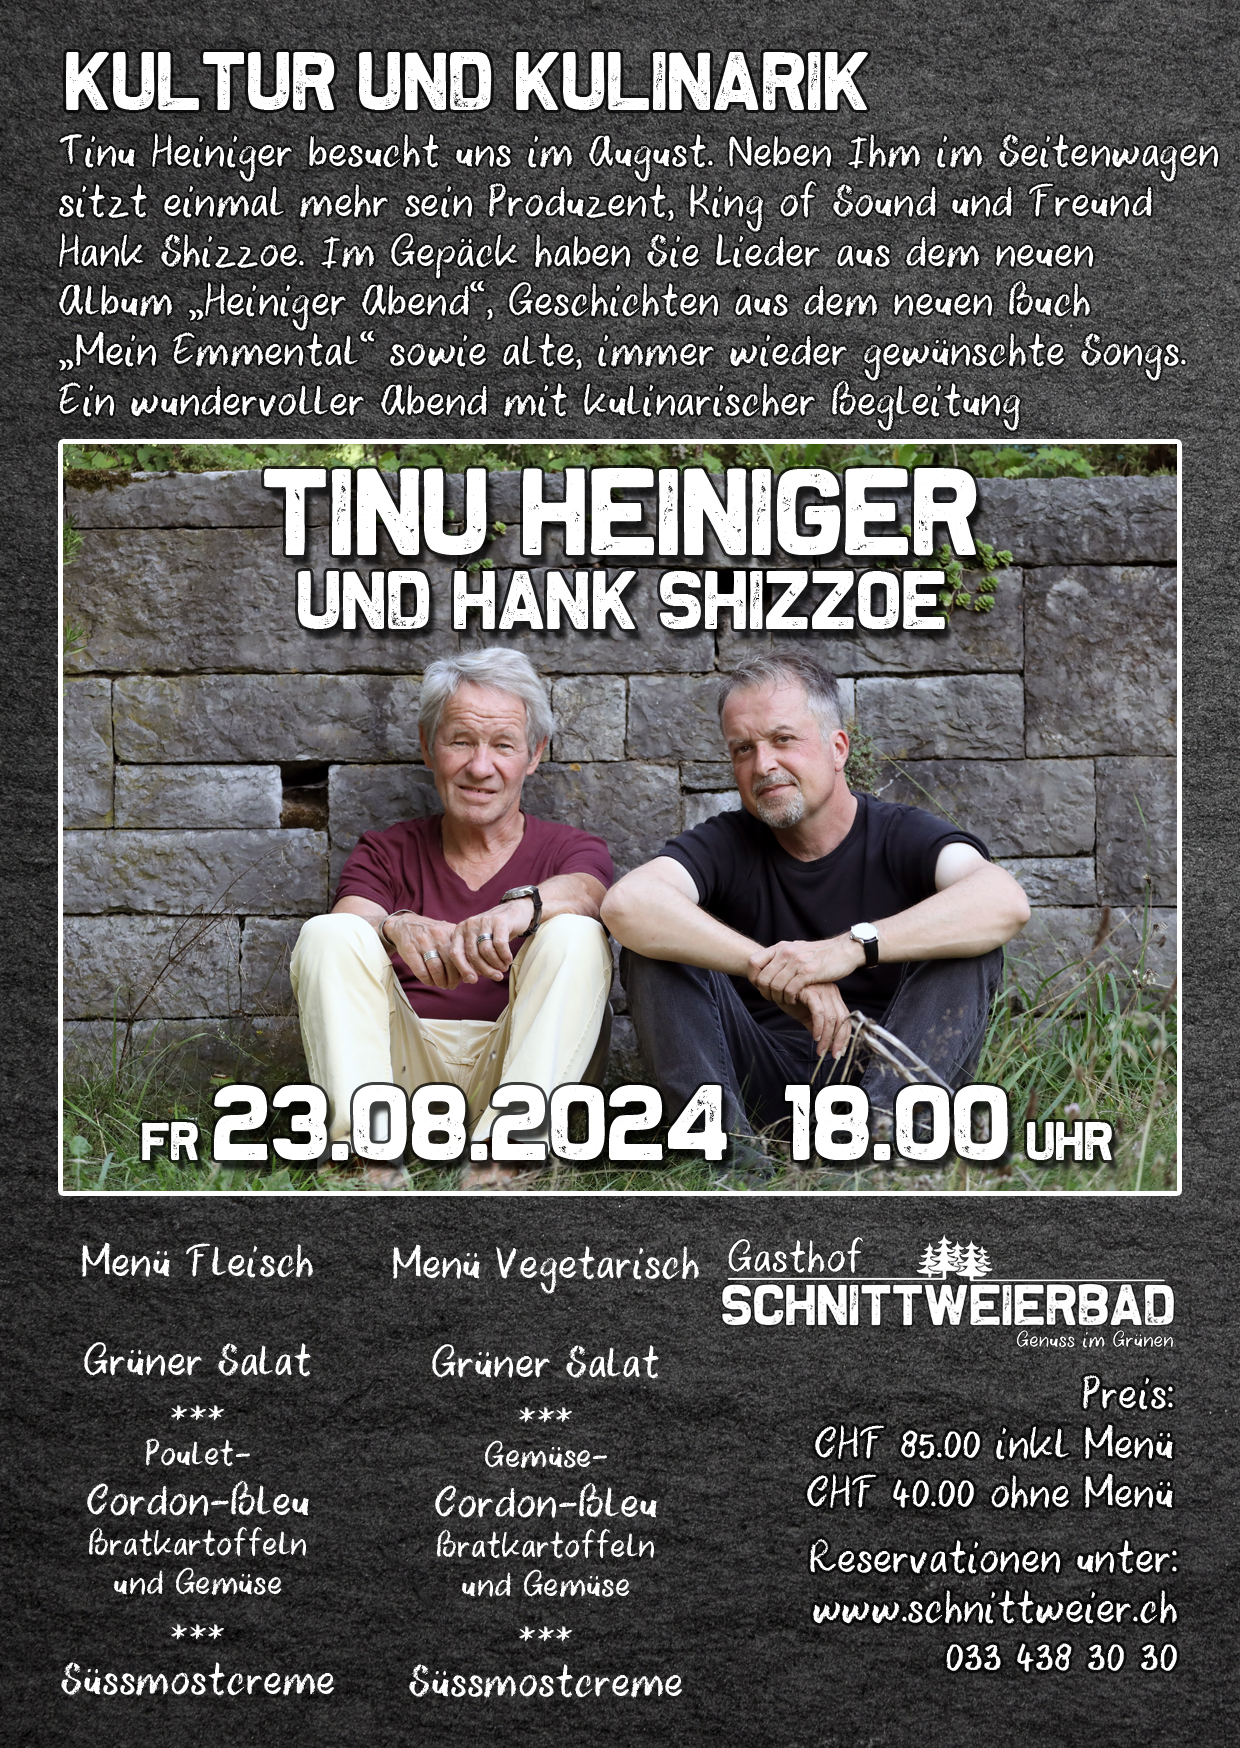 Tinu Heiniger und Hank Shizzoe (Kultur und Kulinarik)